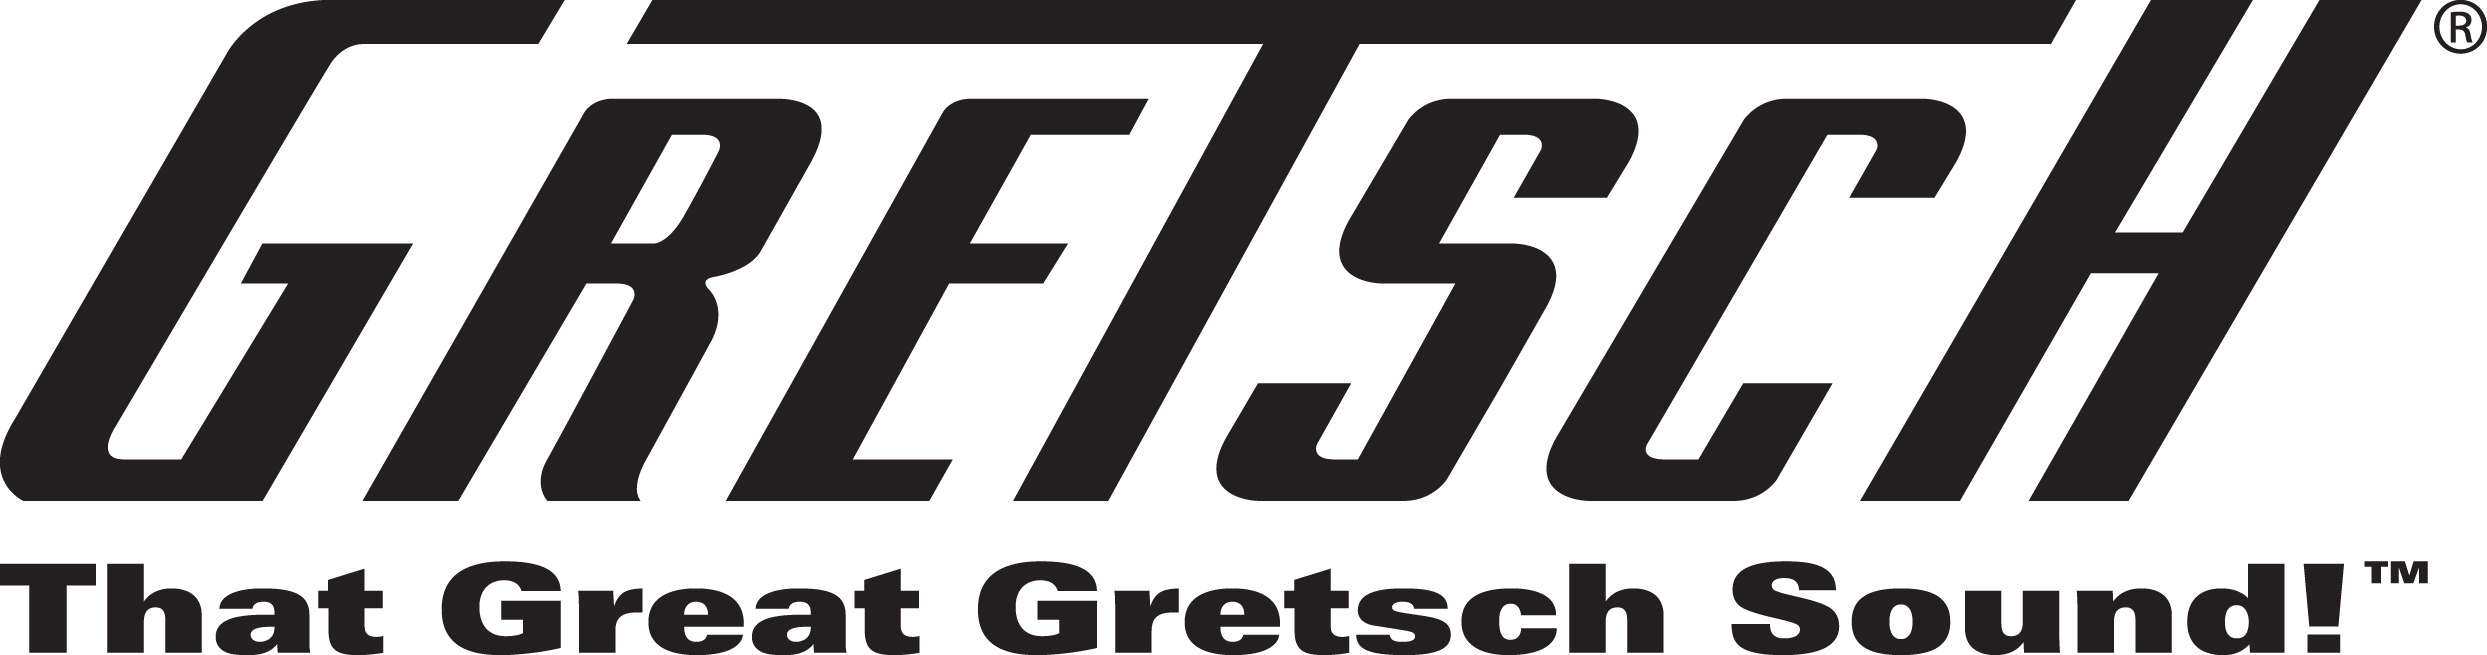 Gretsch_Logo_JPG_1211322035.jpg